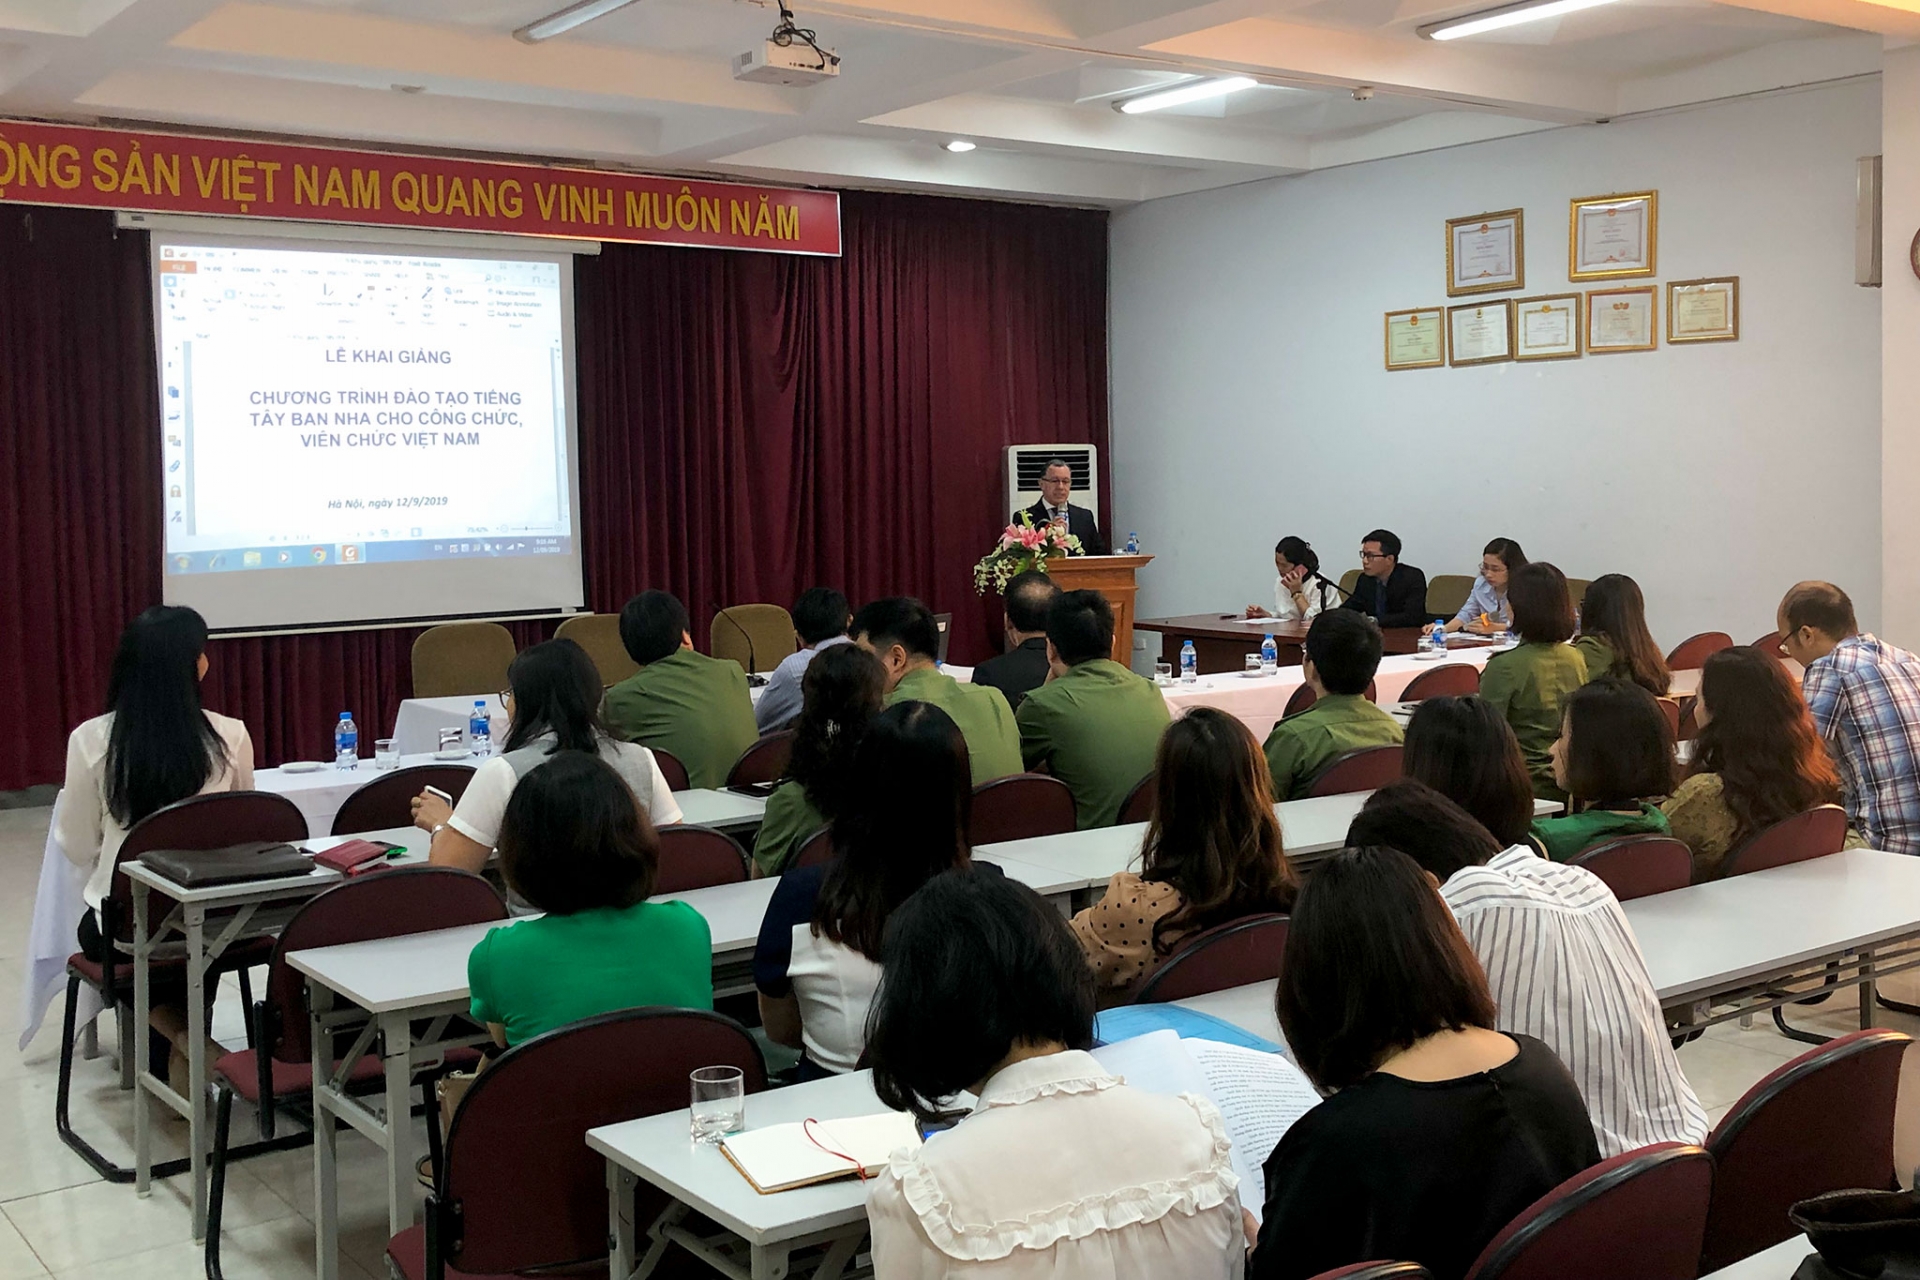 Khai giảng Chương trình đào tạo tiếng Tây Ban Nha dành cho công chức, viên chức Việt Nam